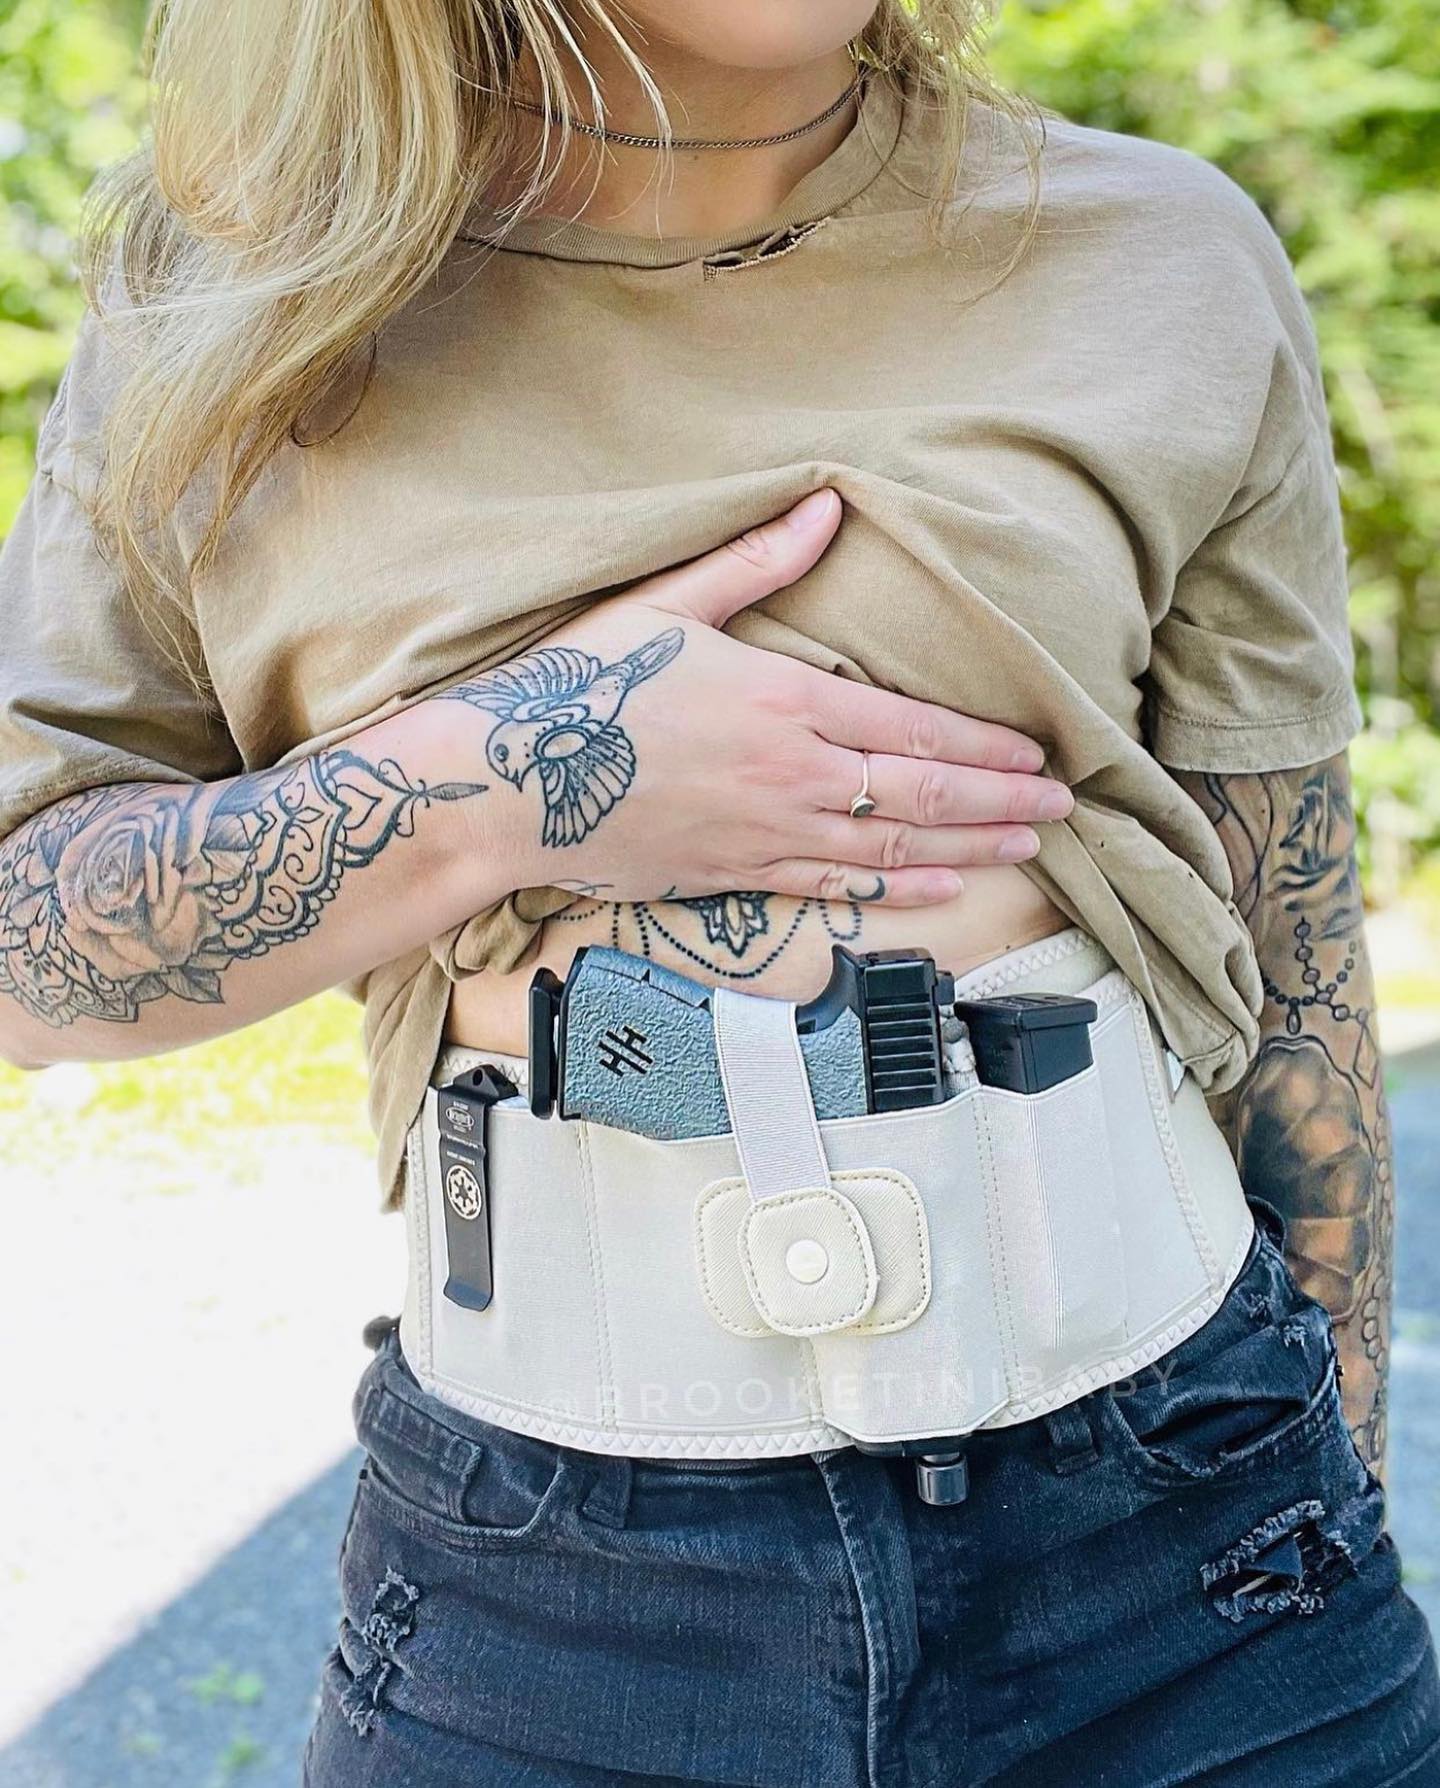 A women wearing a bravobelt belly band holster